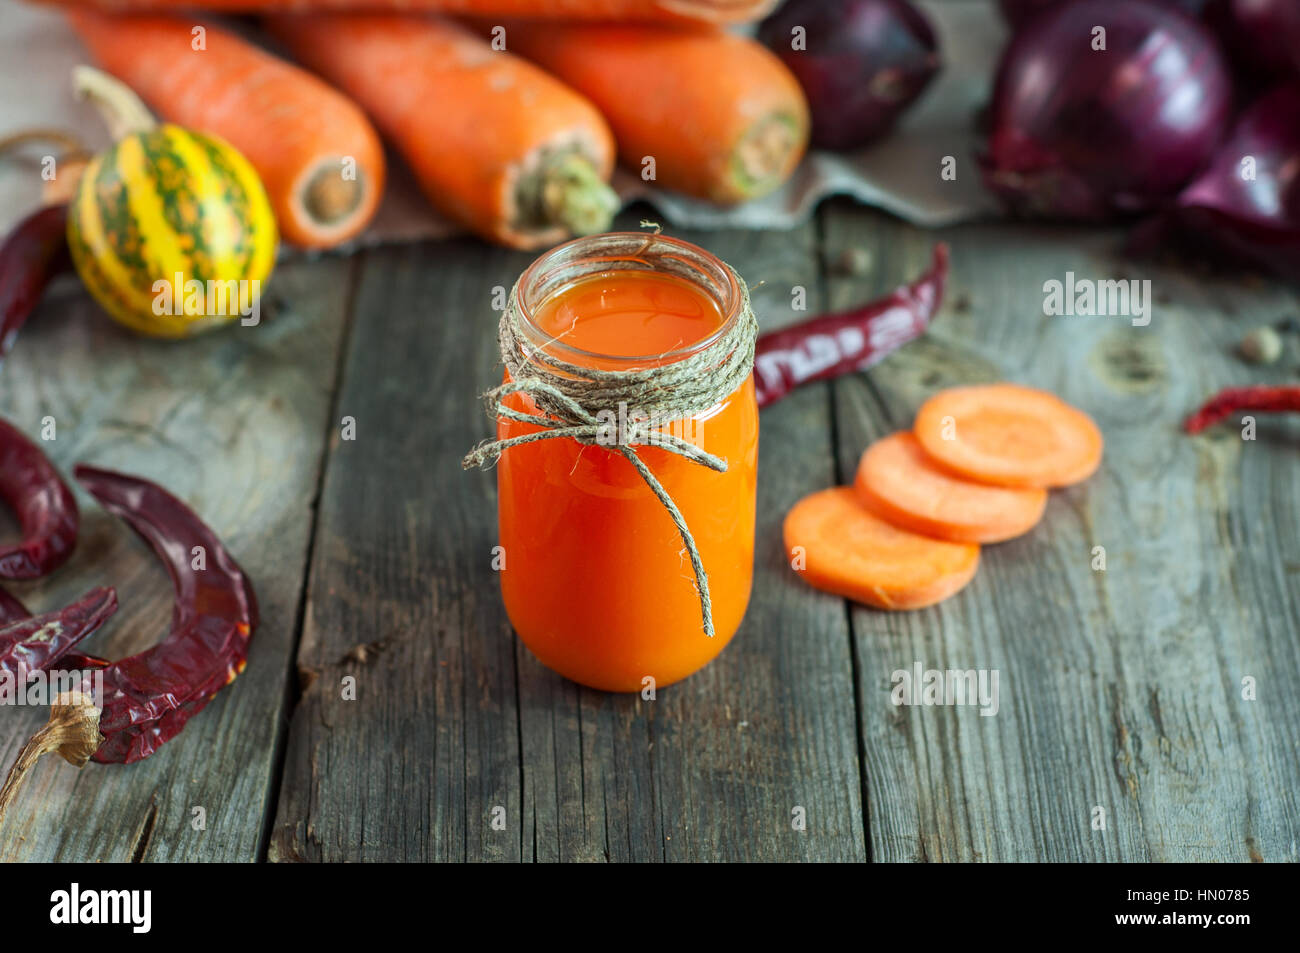 Le jus de carotte dans un petit pot transparent entre les légumes frais, sur une surface en bois gris Banque D'Images